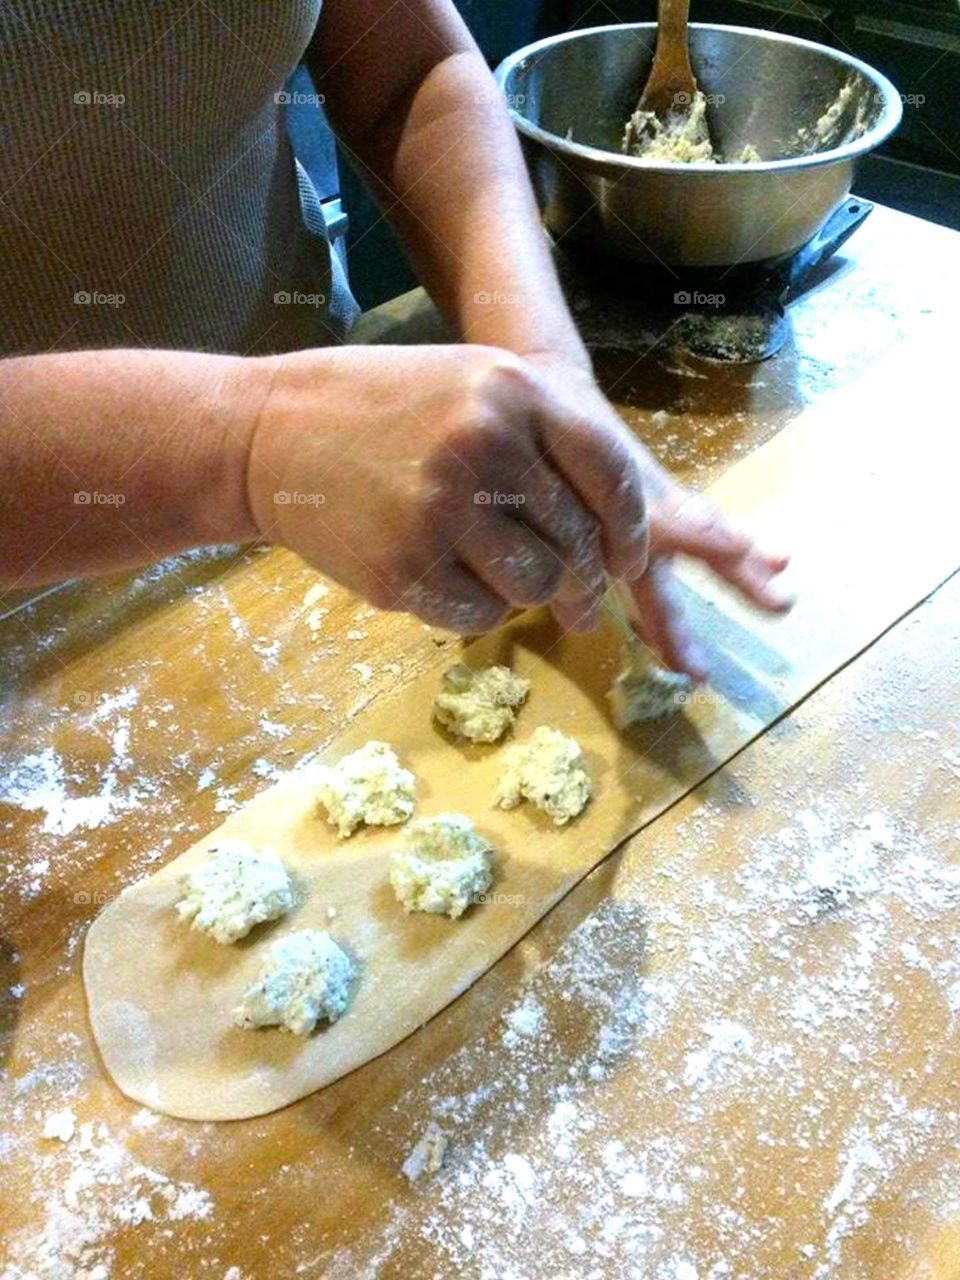 making homemade raviolis